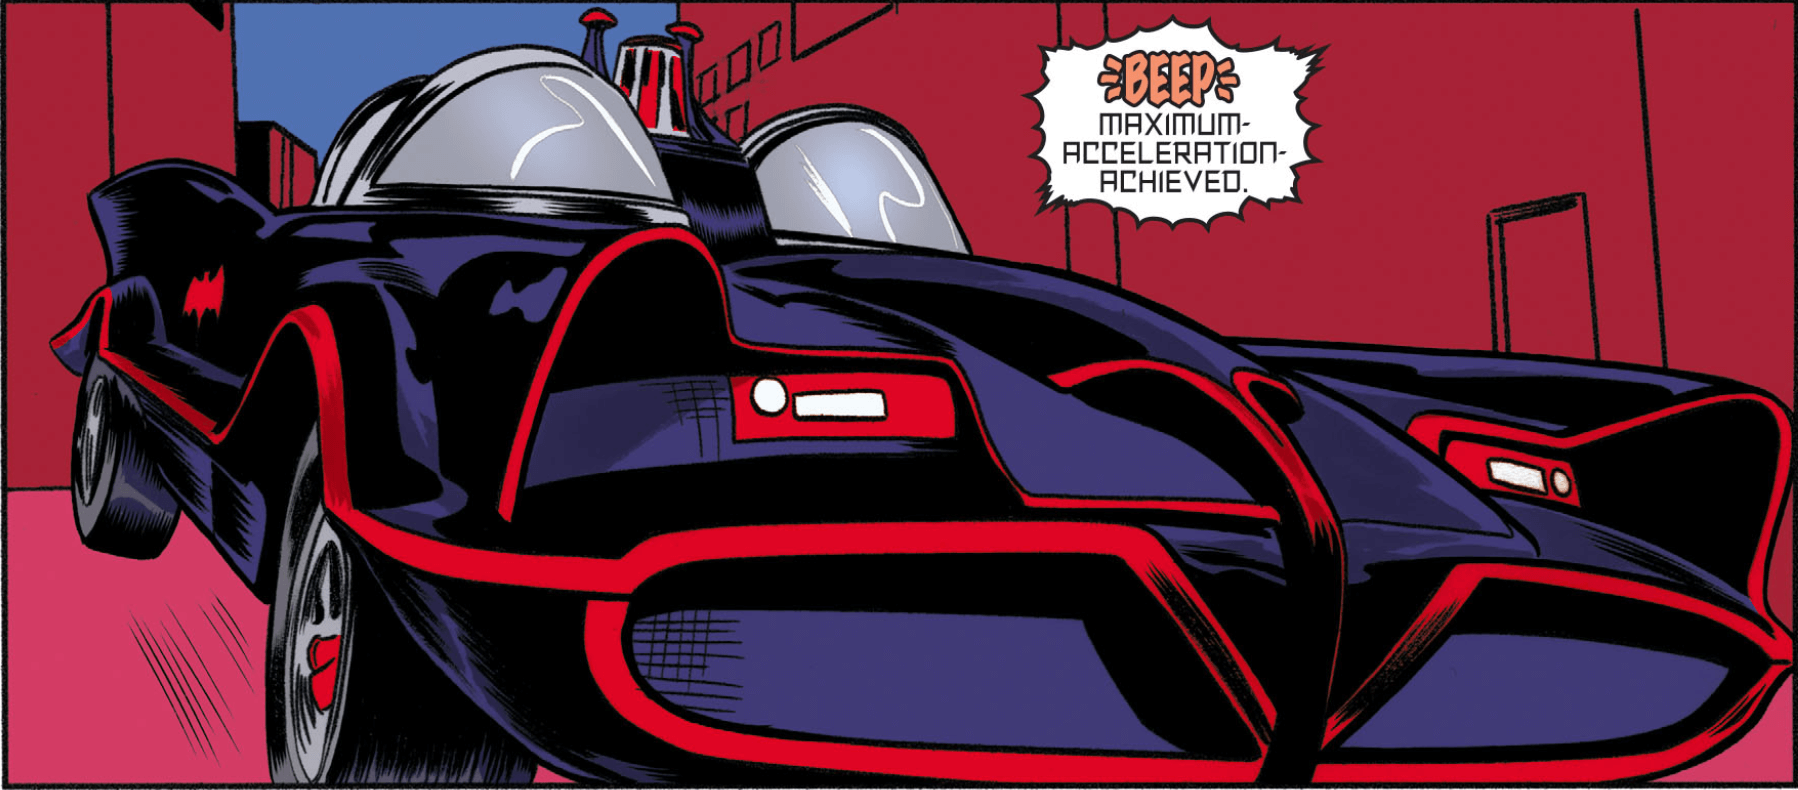 old batmobile in comics - Abeeps Maximum Acceleration Achieved